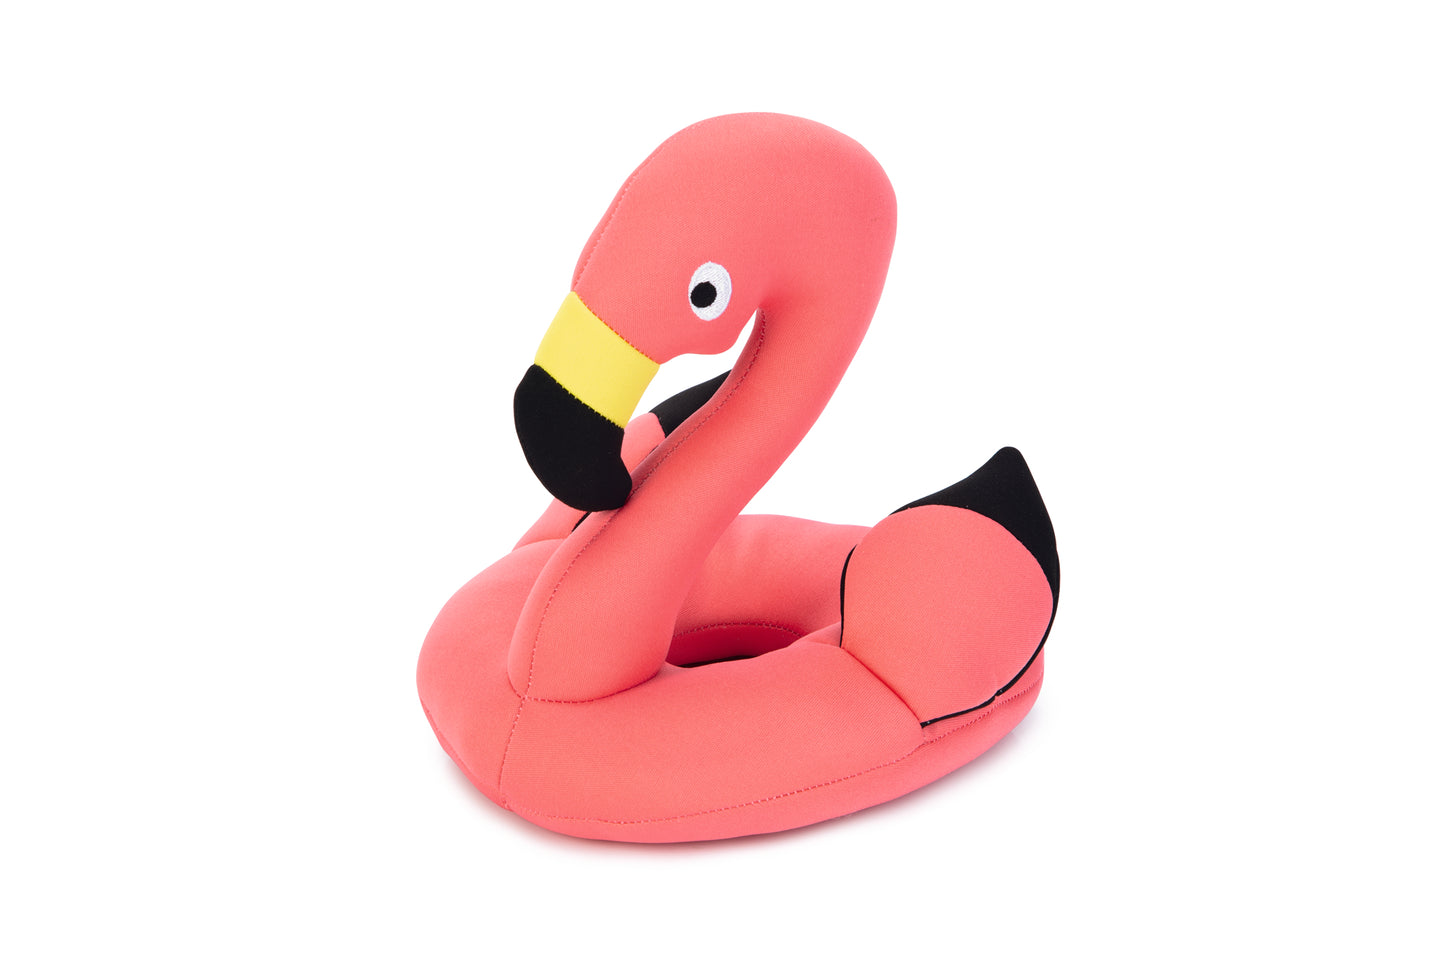 Het Beeztees Flamingo is leuk speelgoed voor jouw hond! Dit knuffeltje kan blijven drijven, waardoor je het goed kunt gebruiken om mee te apporteren in het water. Doordat de flamingo extra groot is, maar liefst 43 cm, zal jouw hond het knuffeltje nooit over het hoofd zien. De vrolijke kleuren en de leuke vormgeving, zorgen ervoor dat het een erg leuk gezicht is.